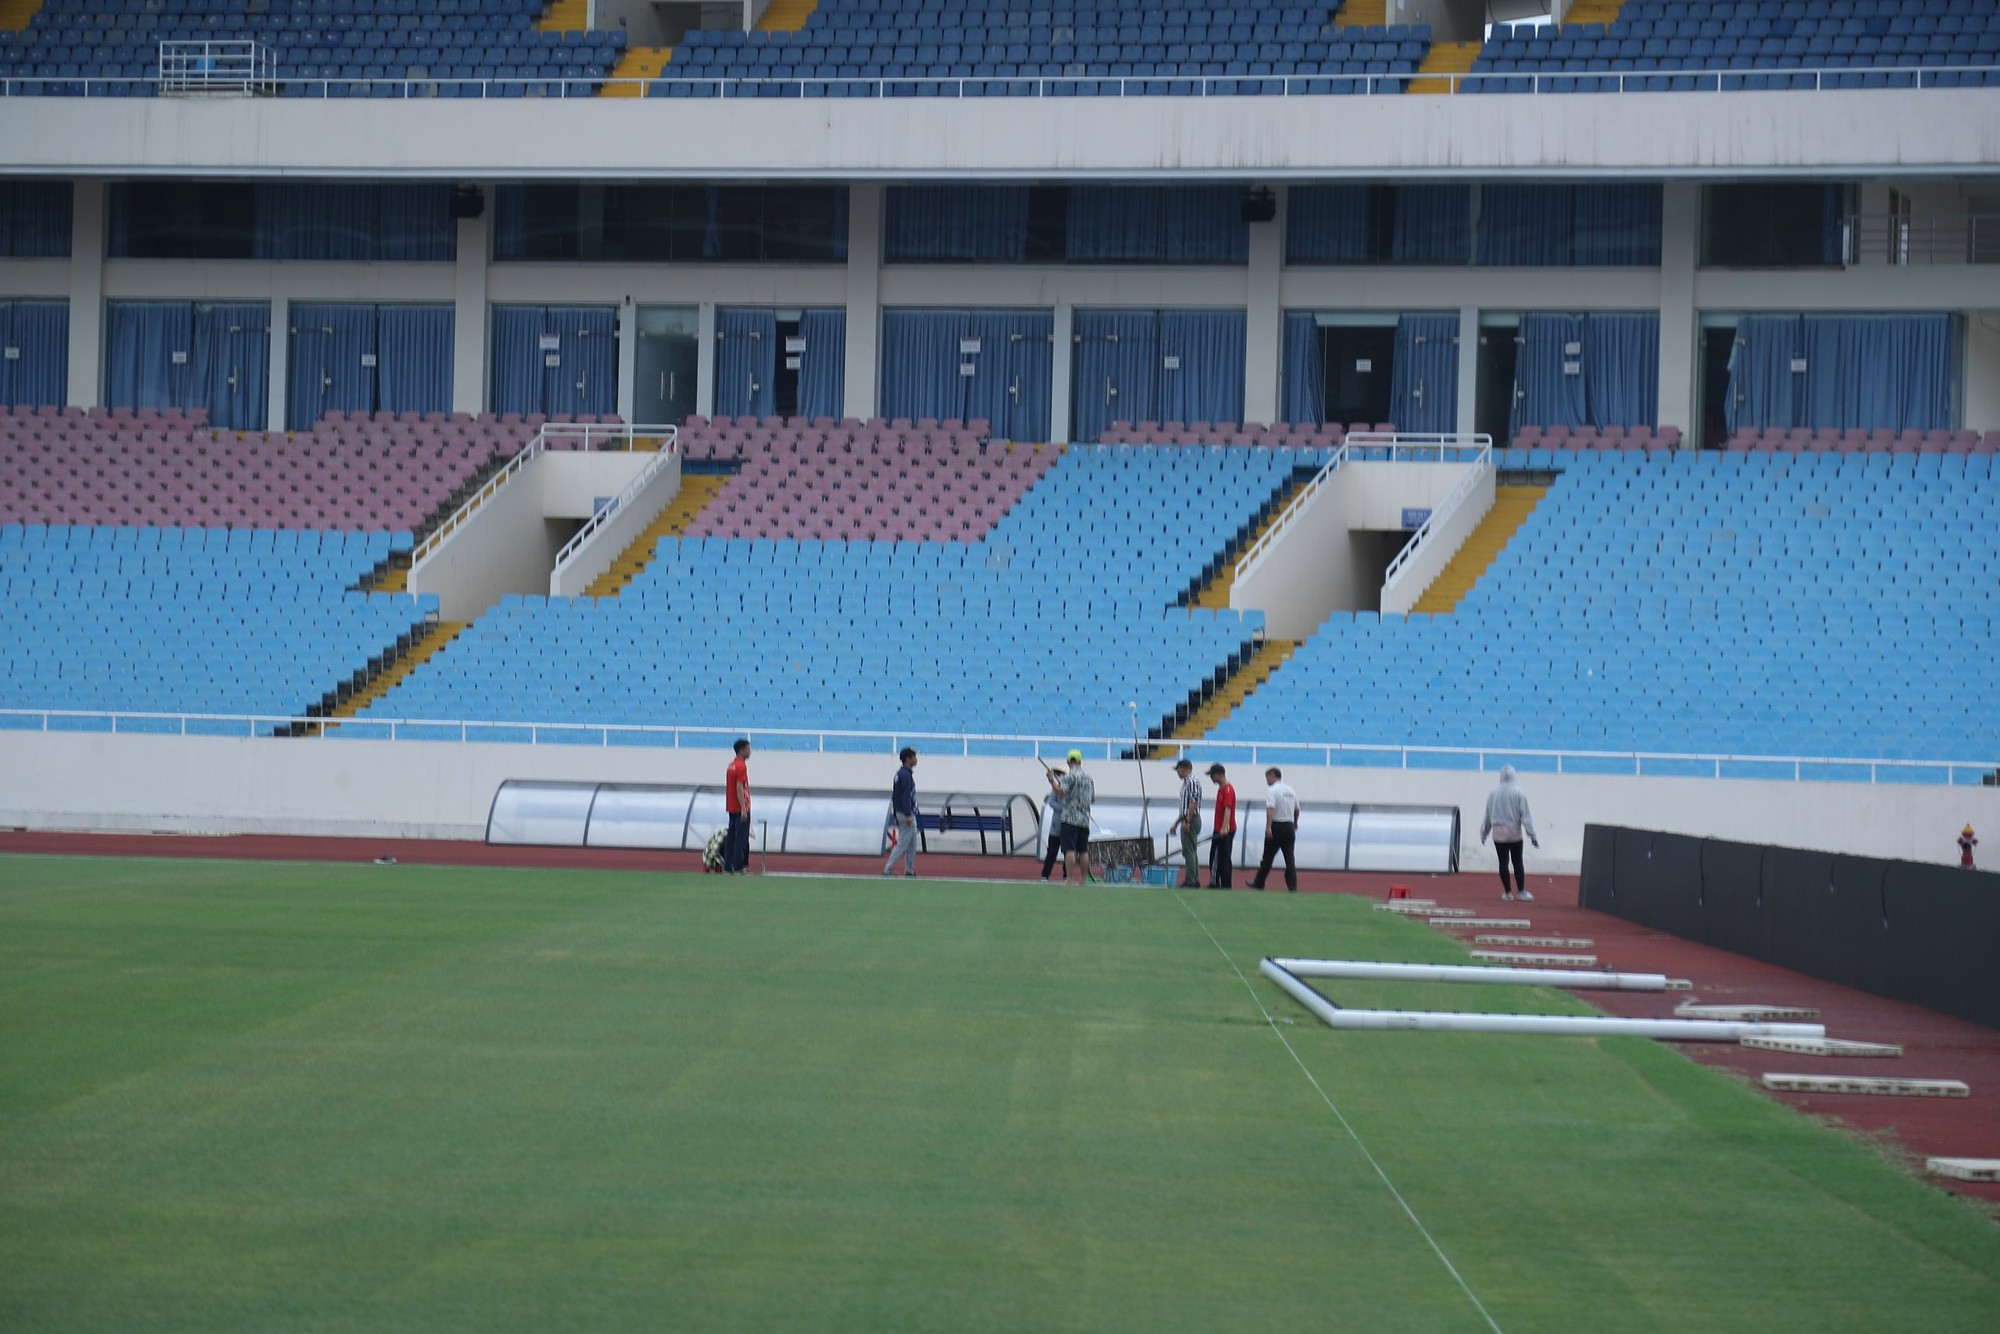 Sân Mỹ Đình "khoác áo mới" trước trận đấu của ĐT Việt Nam- Ảnh 7.